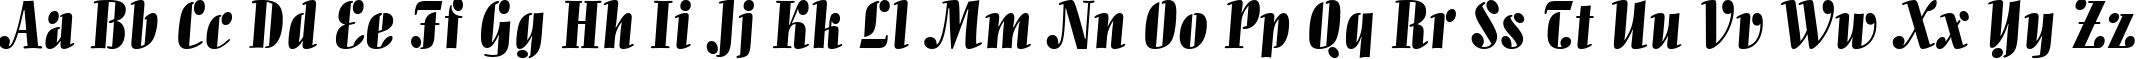 Пример написания английского алфавита шрифтом Allegro BT